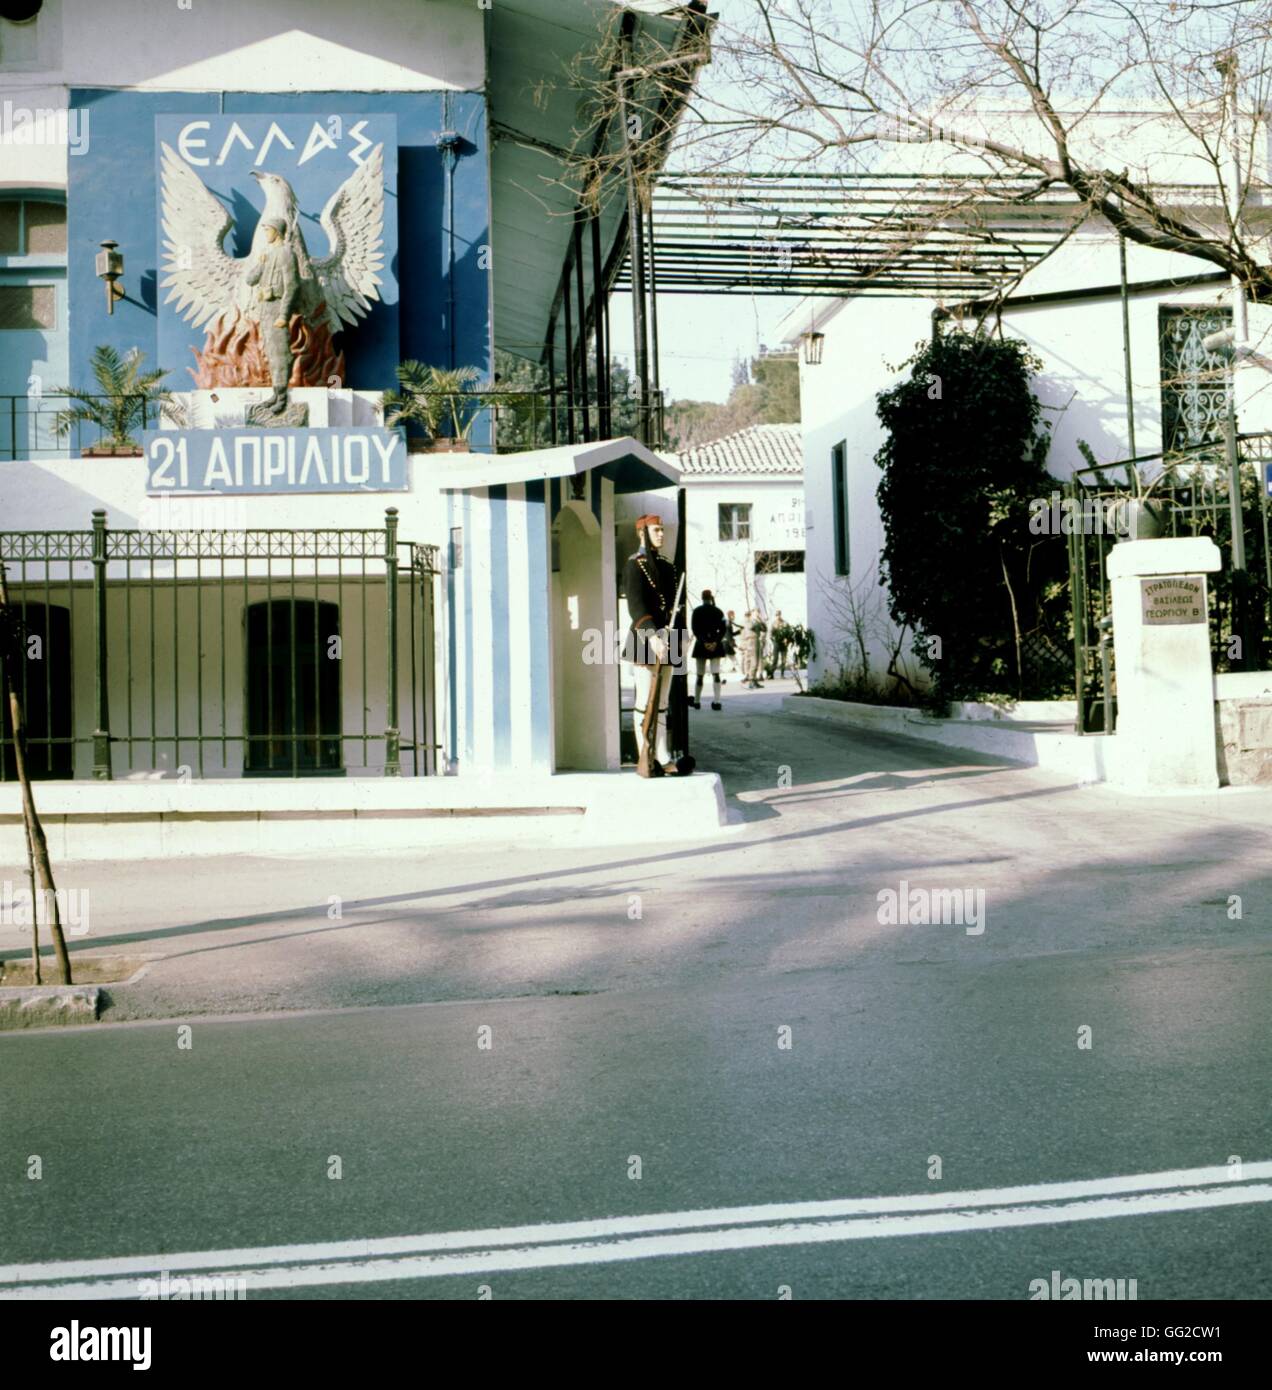 Athènes, sur le mur, une affiche symbolisant le régime des colonels en Grèce 1972 Photographie : Grivas Banque D'Images